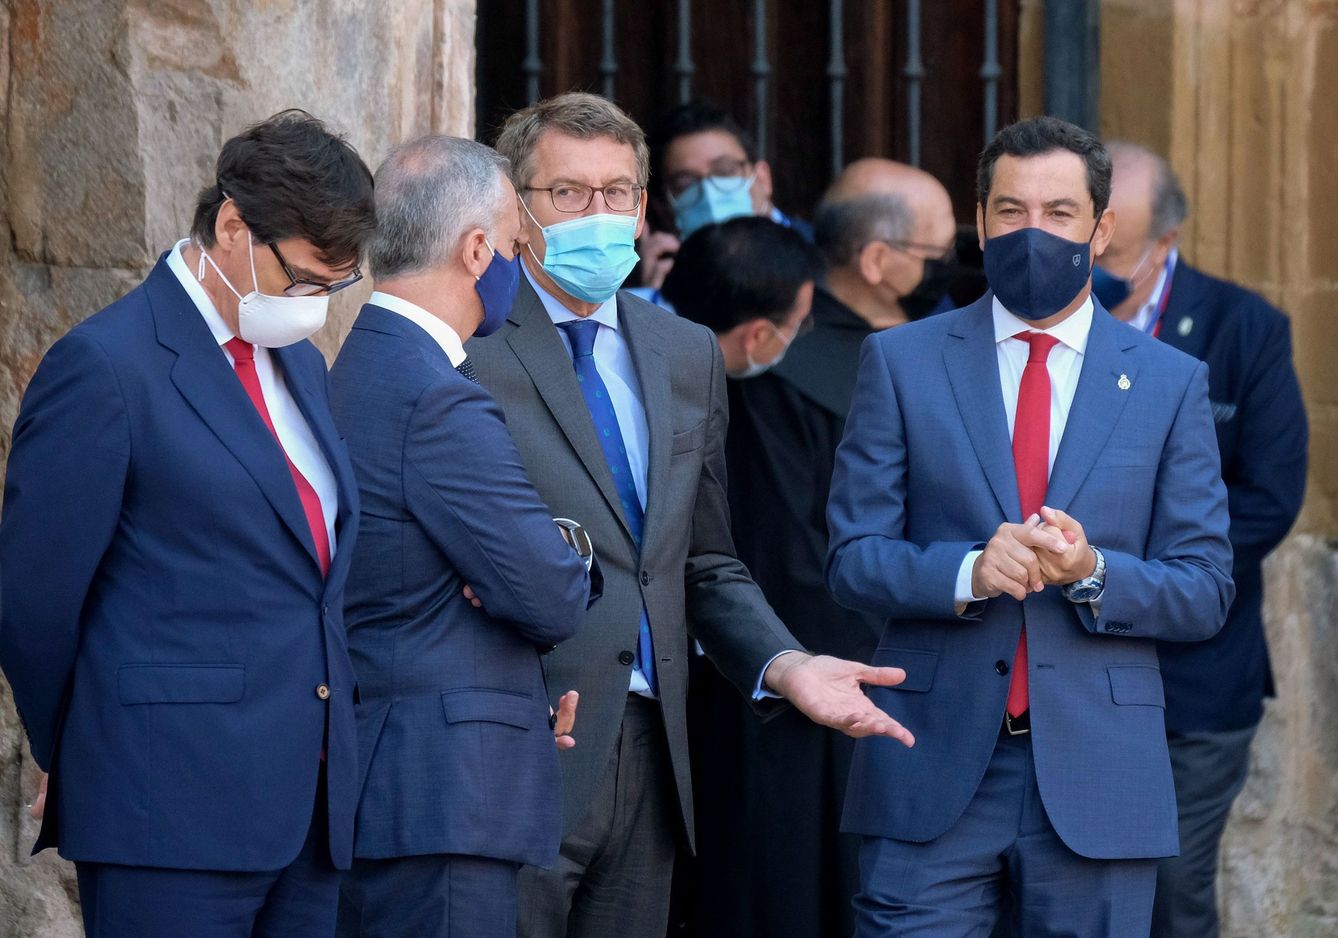 De derecha a izquierda: los presidentes de Andalucía, Juanma Moreno; Galicia, Alberto Núñez Feijóo; País Vasco, Iñigo Urkullu; y el ministro de Sanidad, Salvador Illa. (EFE)